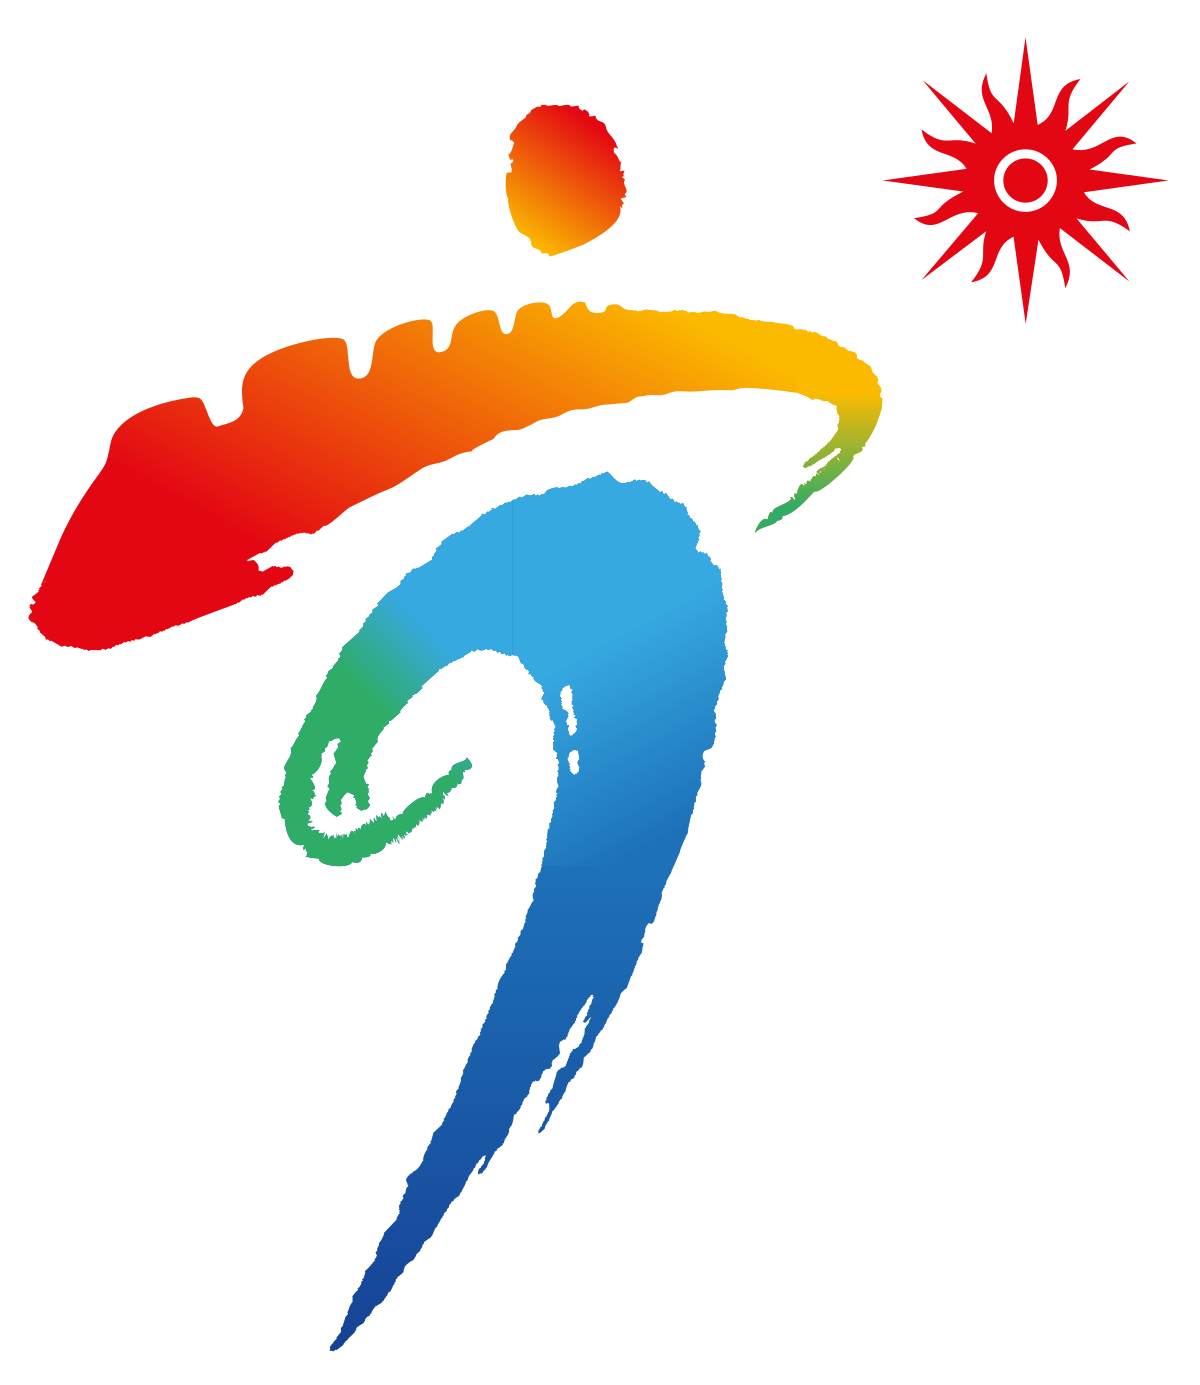 Nanjing 2013